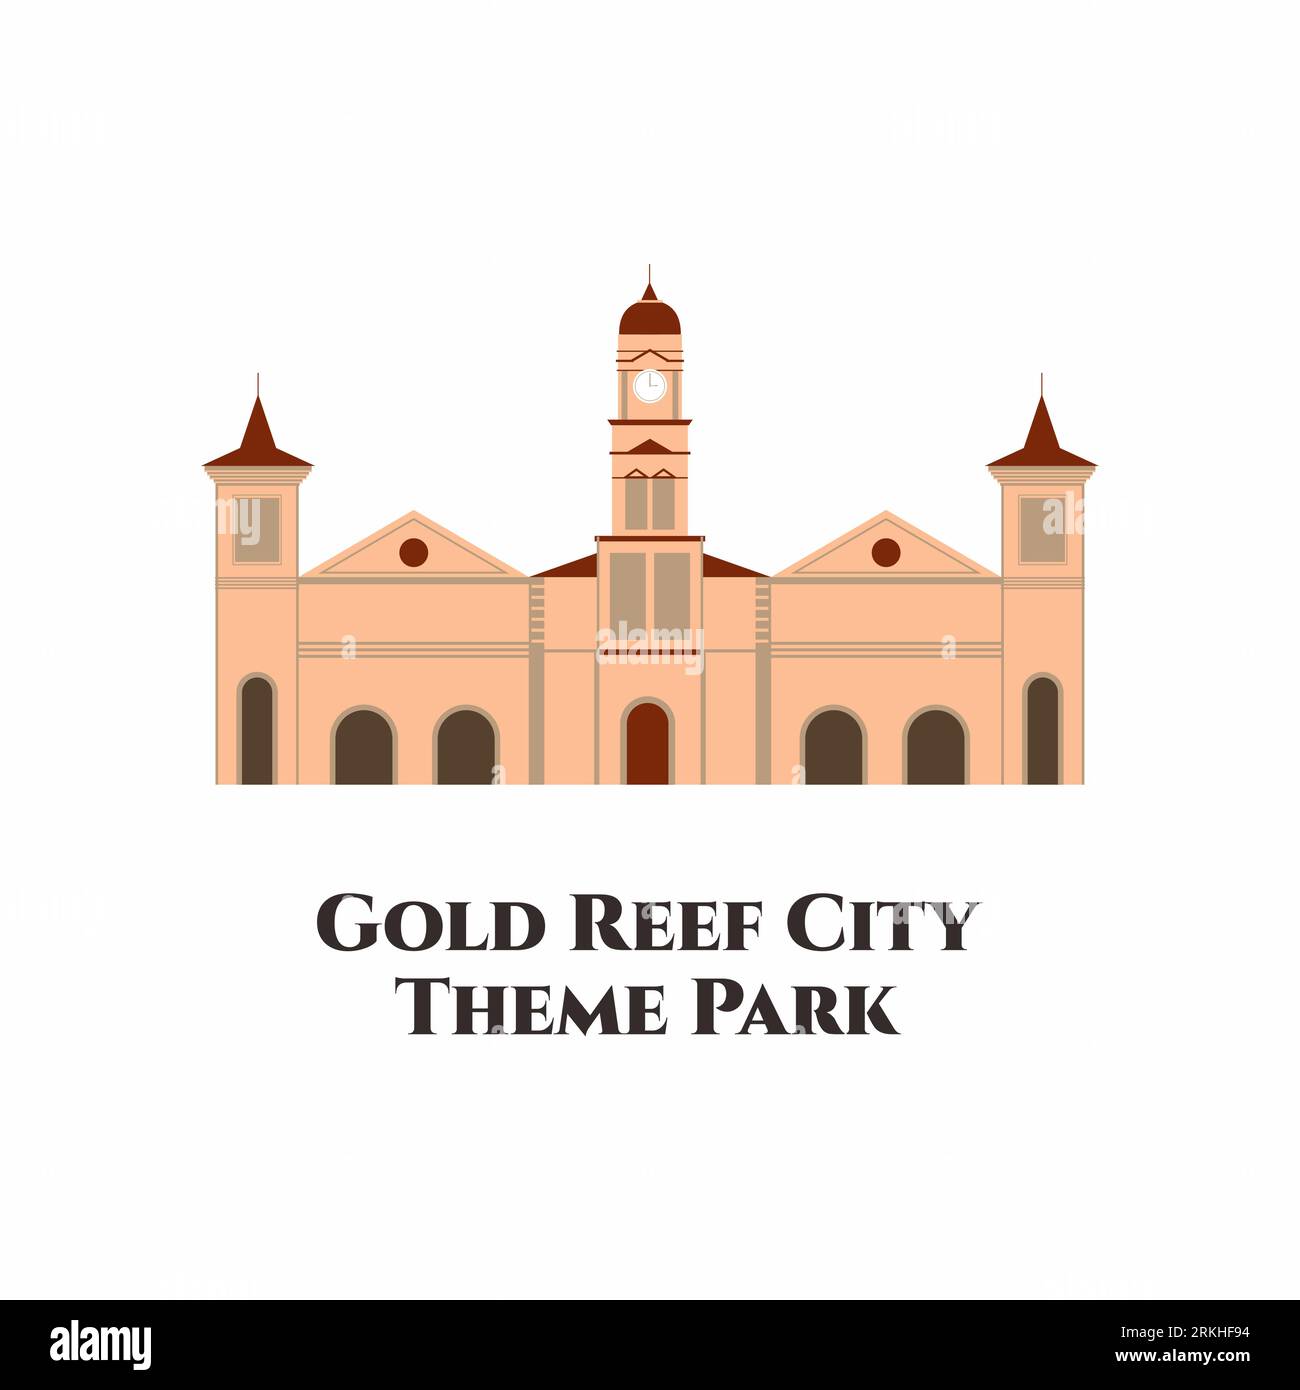 Gold Reef City est un parc d'attractions situé à Johannesburg, en Afrique du Sud. L'un des plus grands et meilleurs parcs à thème de l'Afrique australe, avec manèges et attractions f Illustration de Vecteur